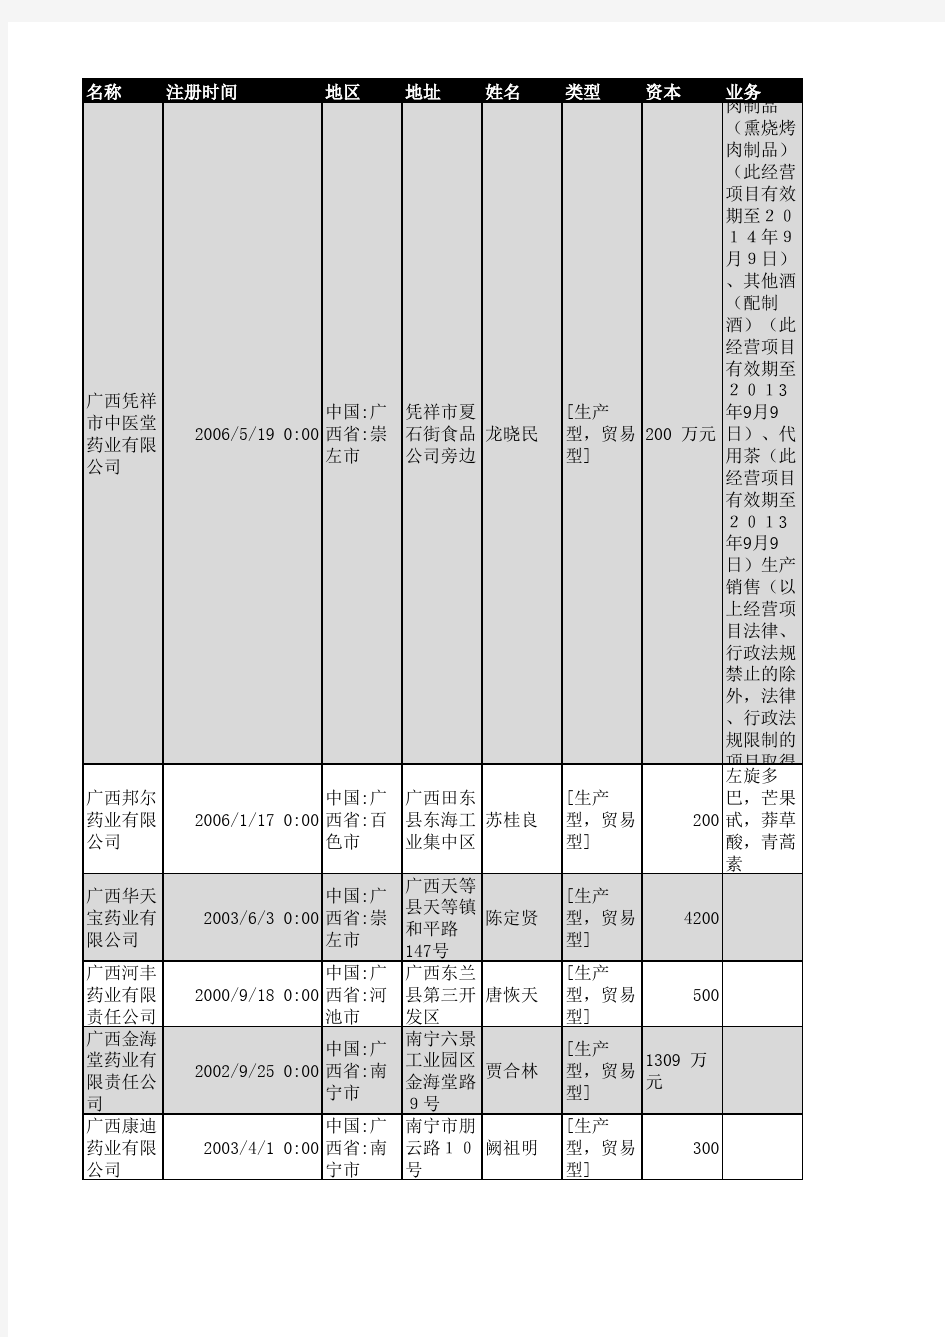 2018年广西省医药行业企业名录347家